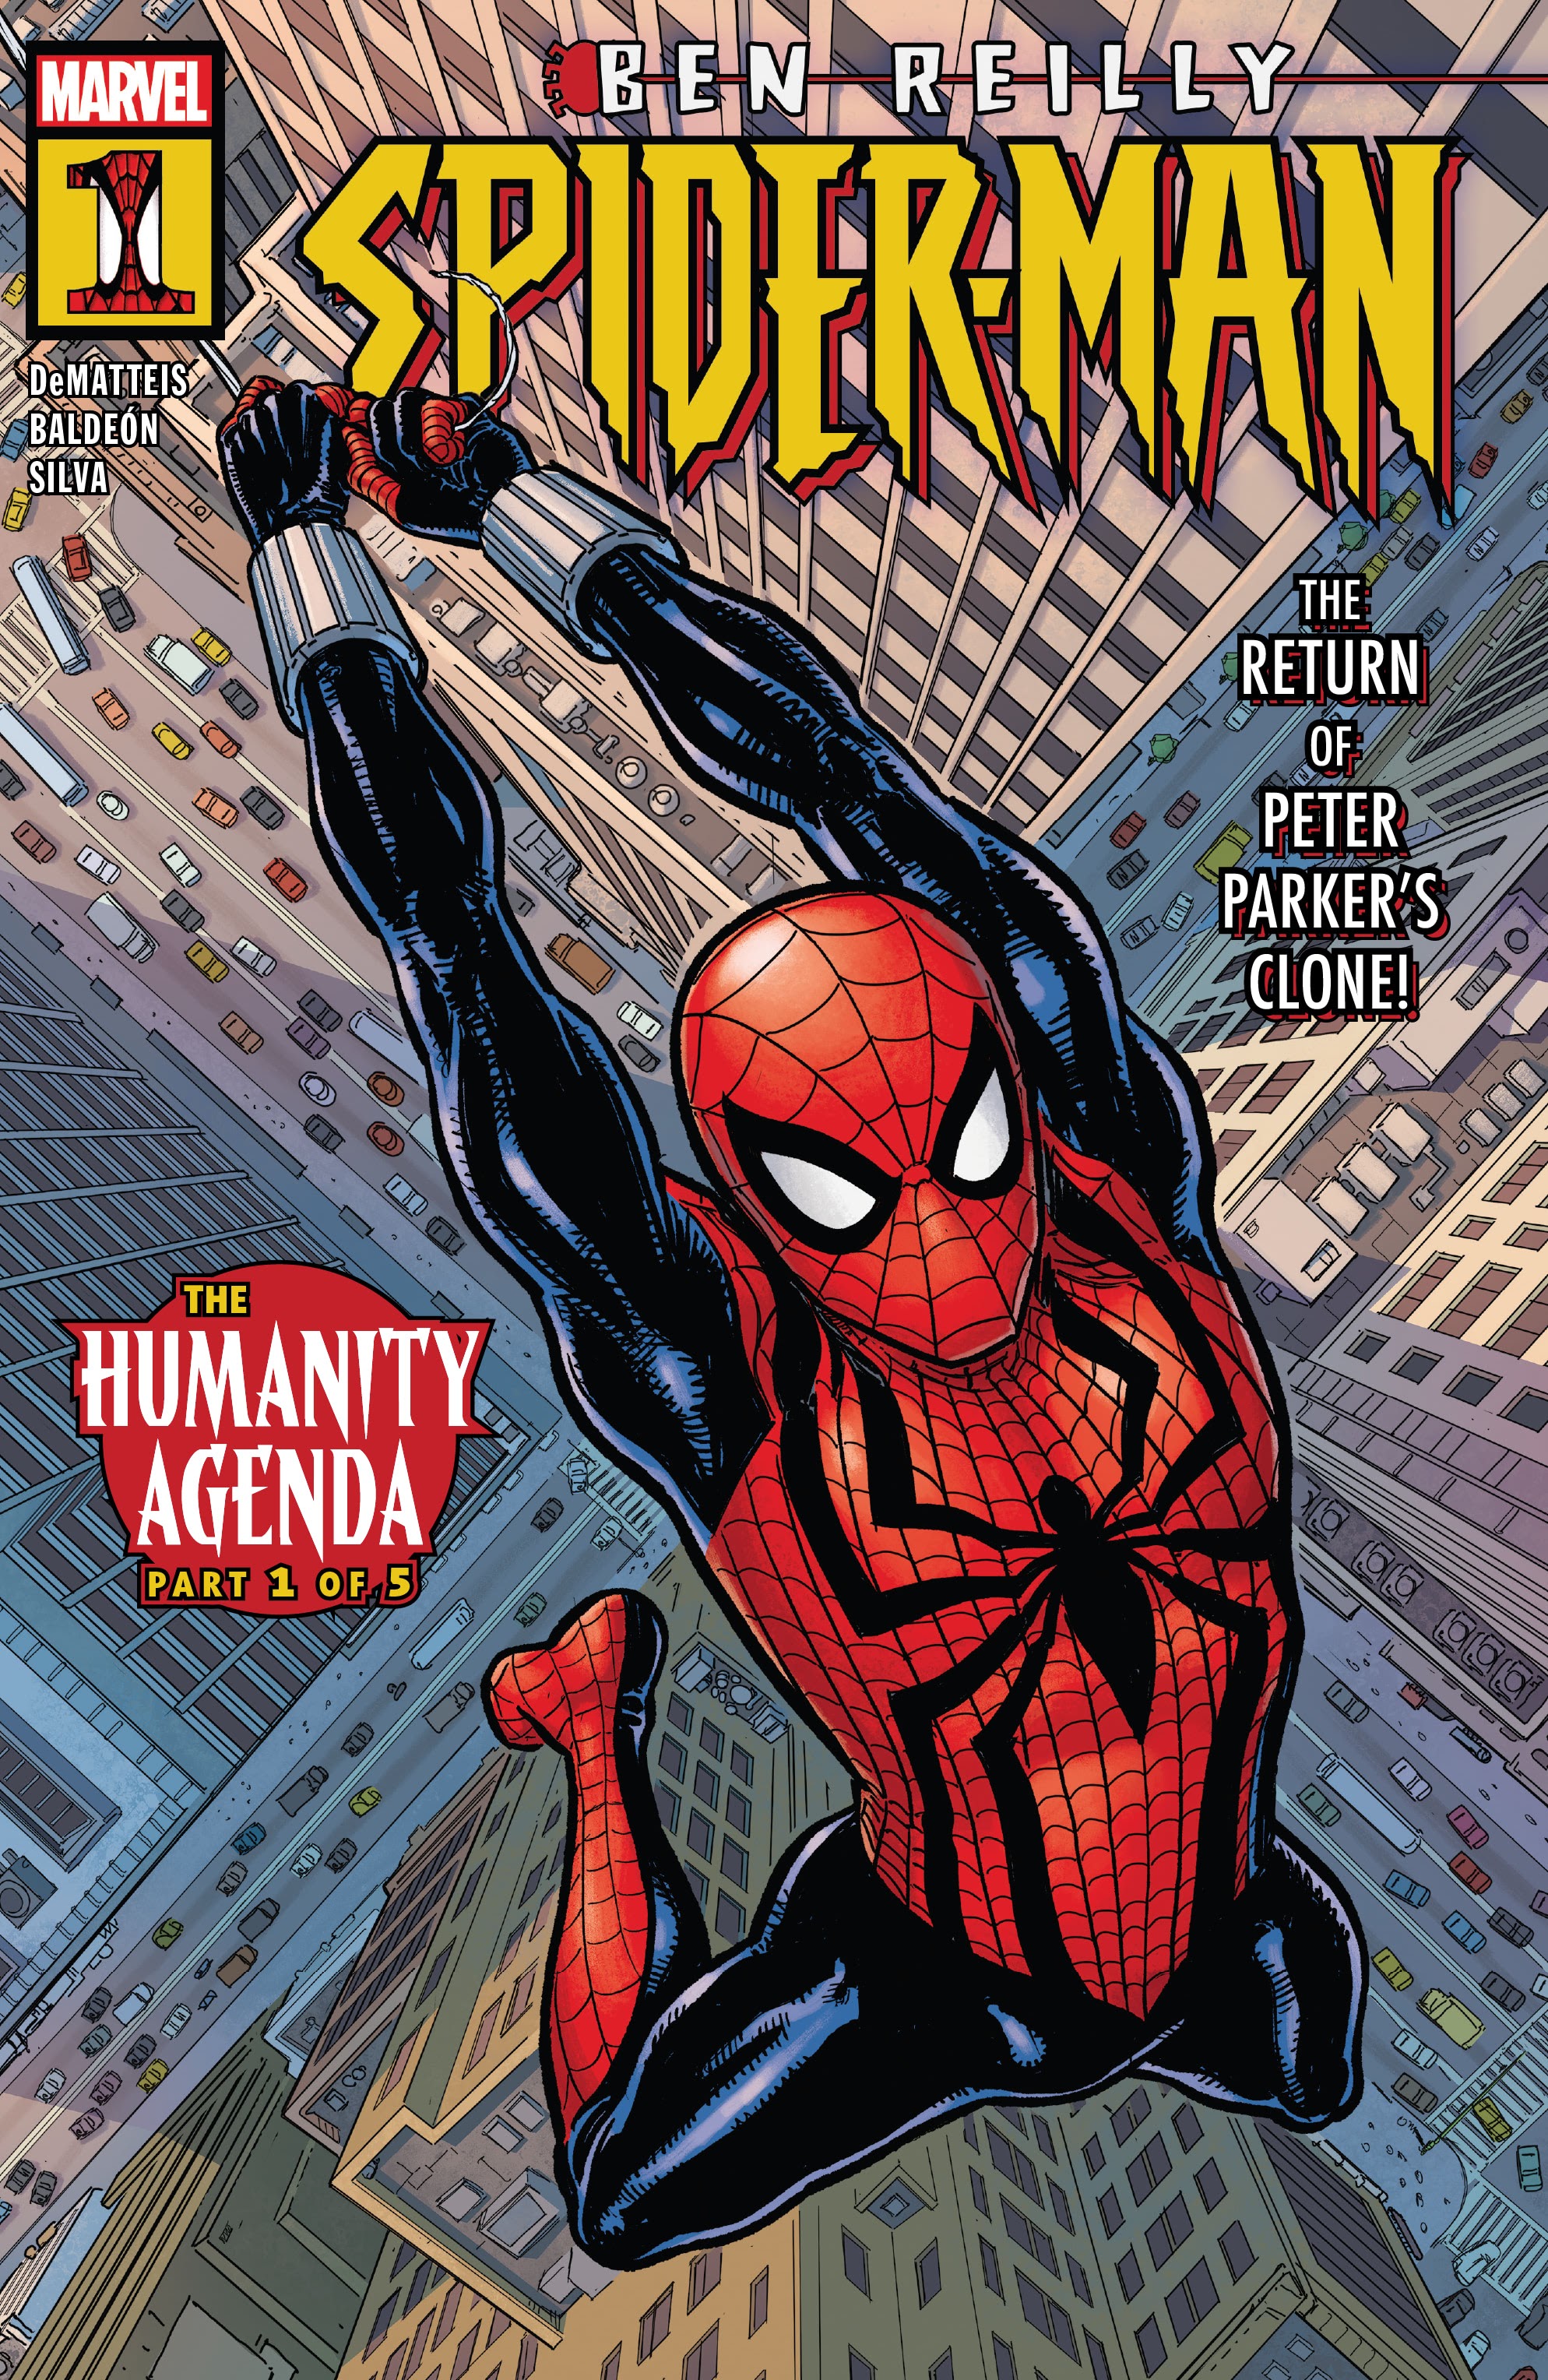 Read online Ben Reilly: Spider-Man comic -  Issue #1 - 1